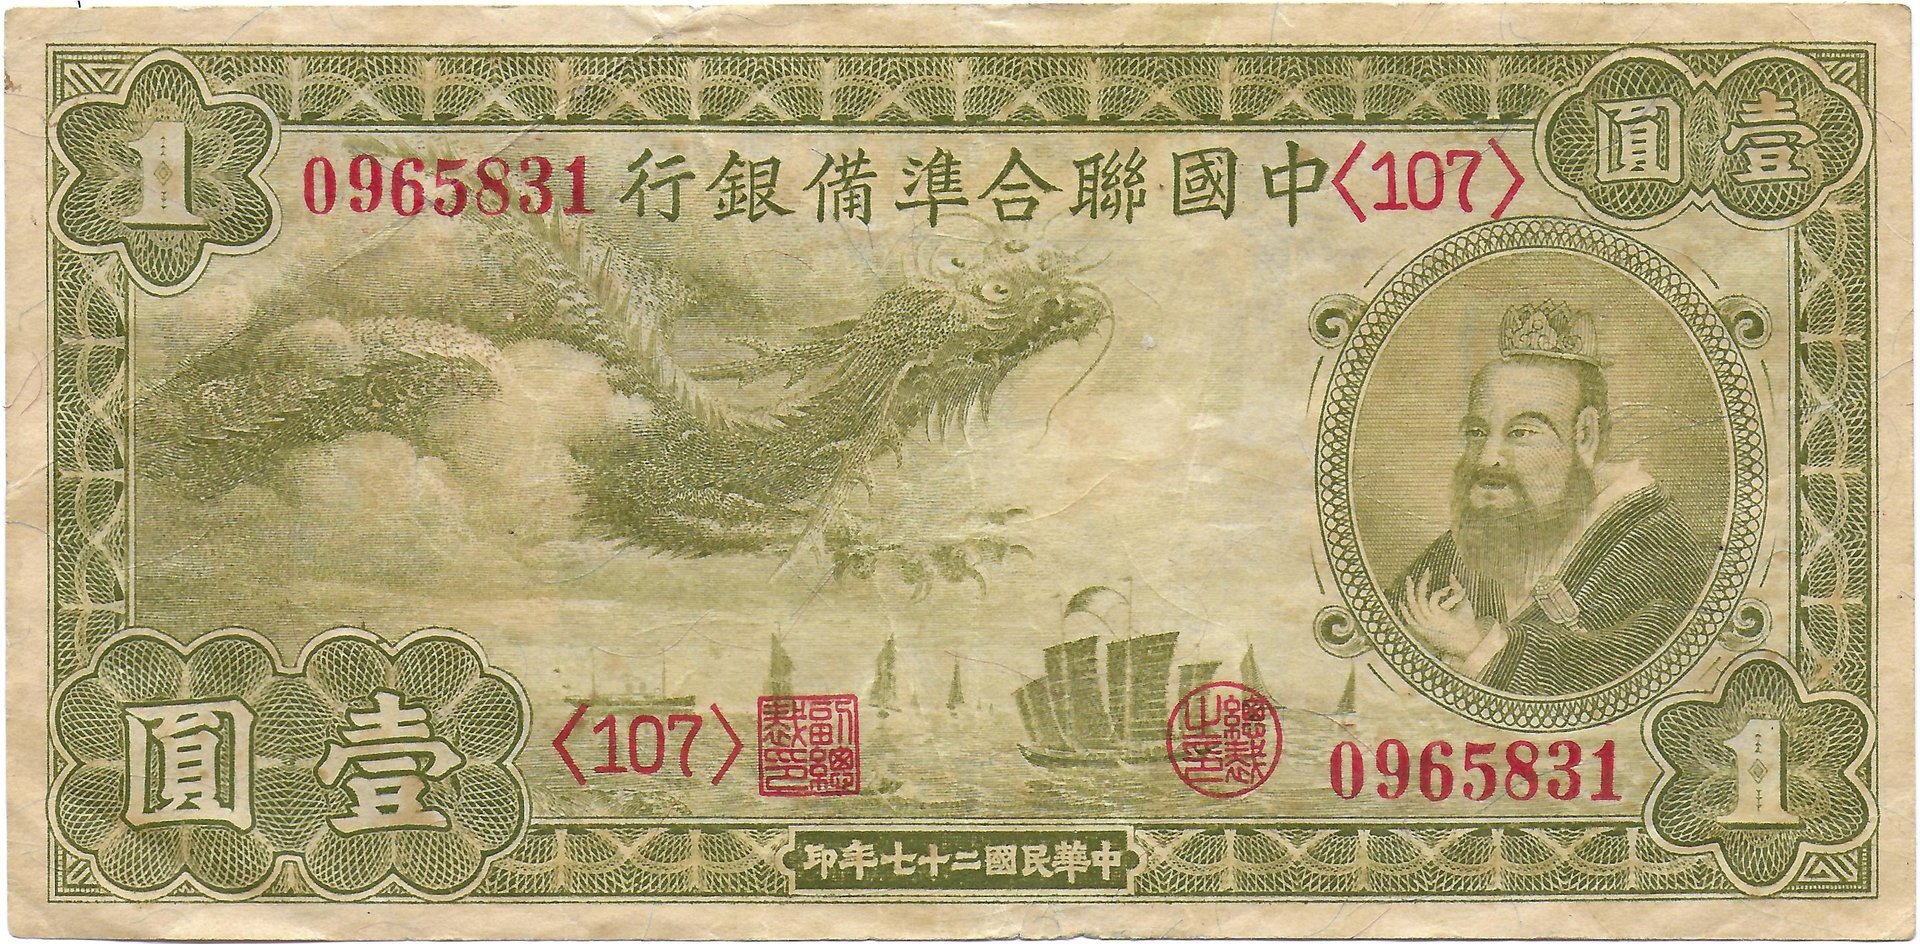 Bank of China front.jpg